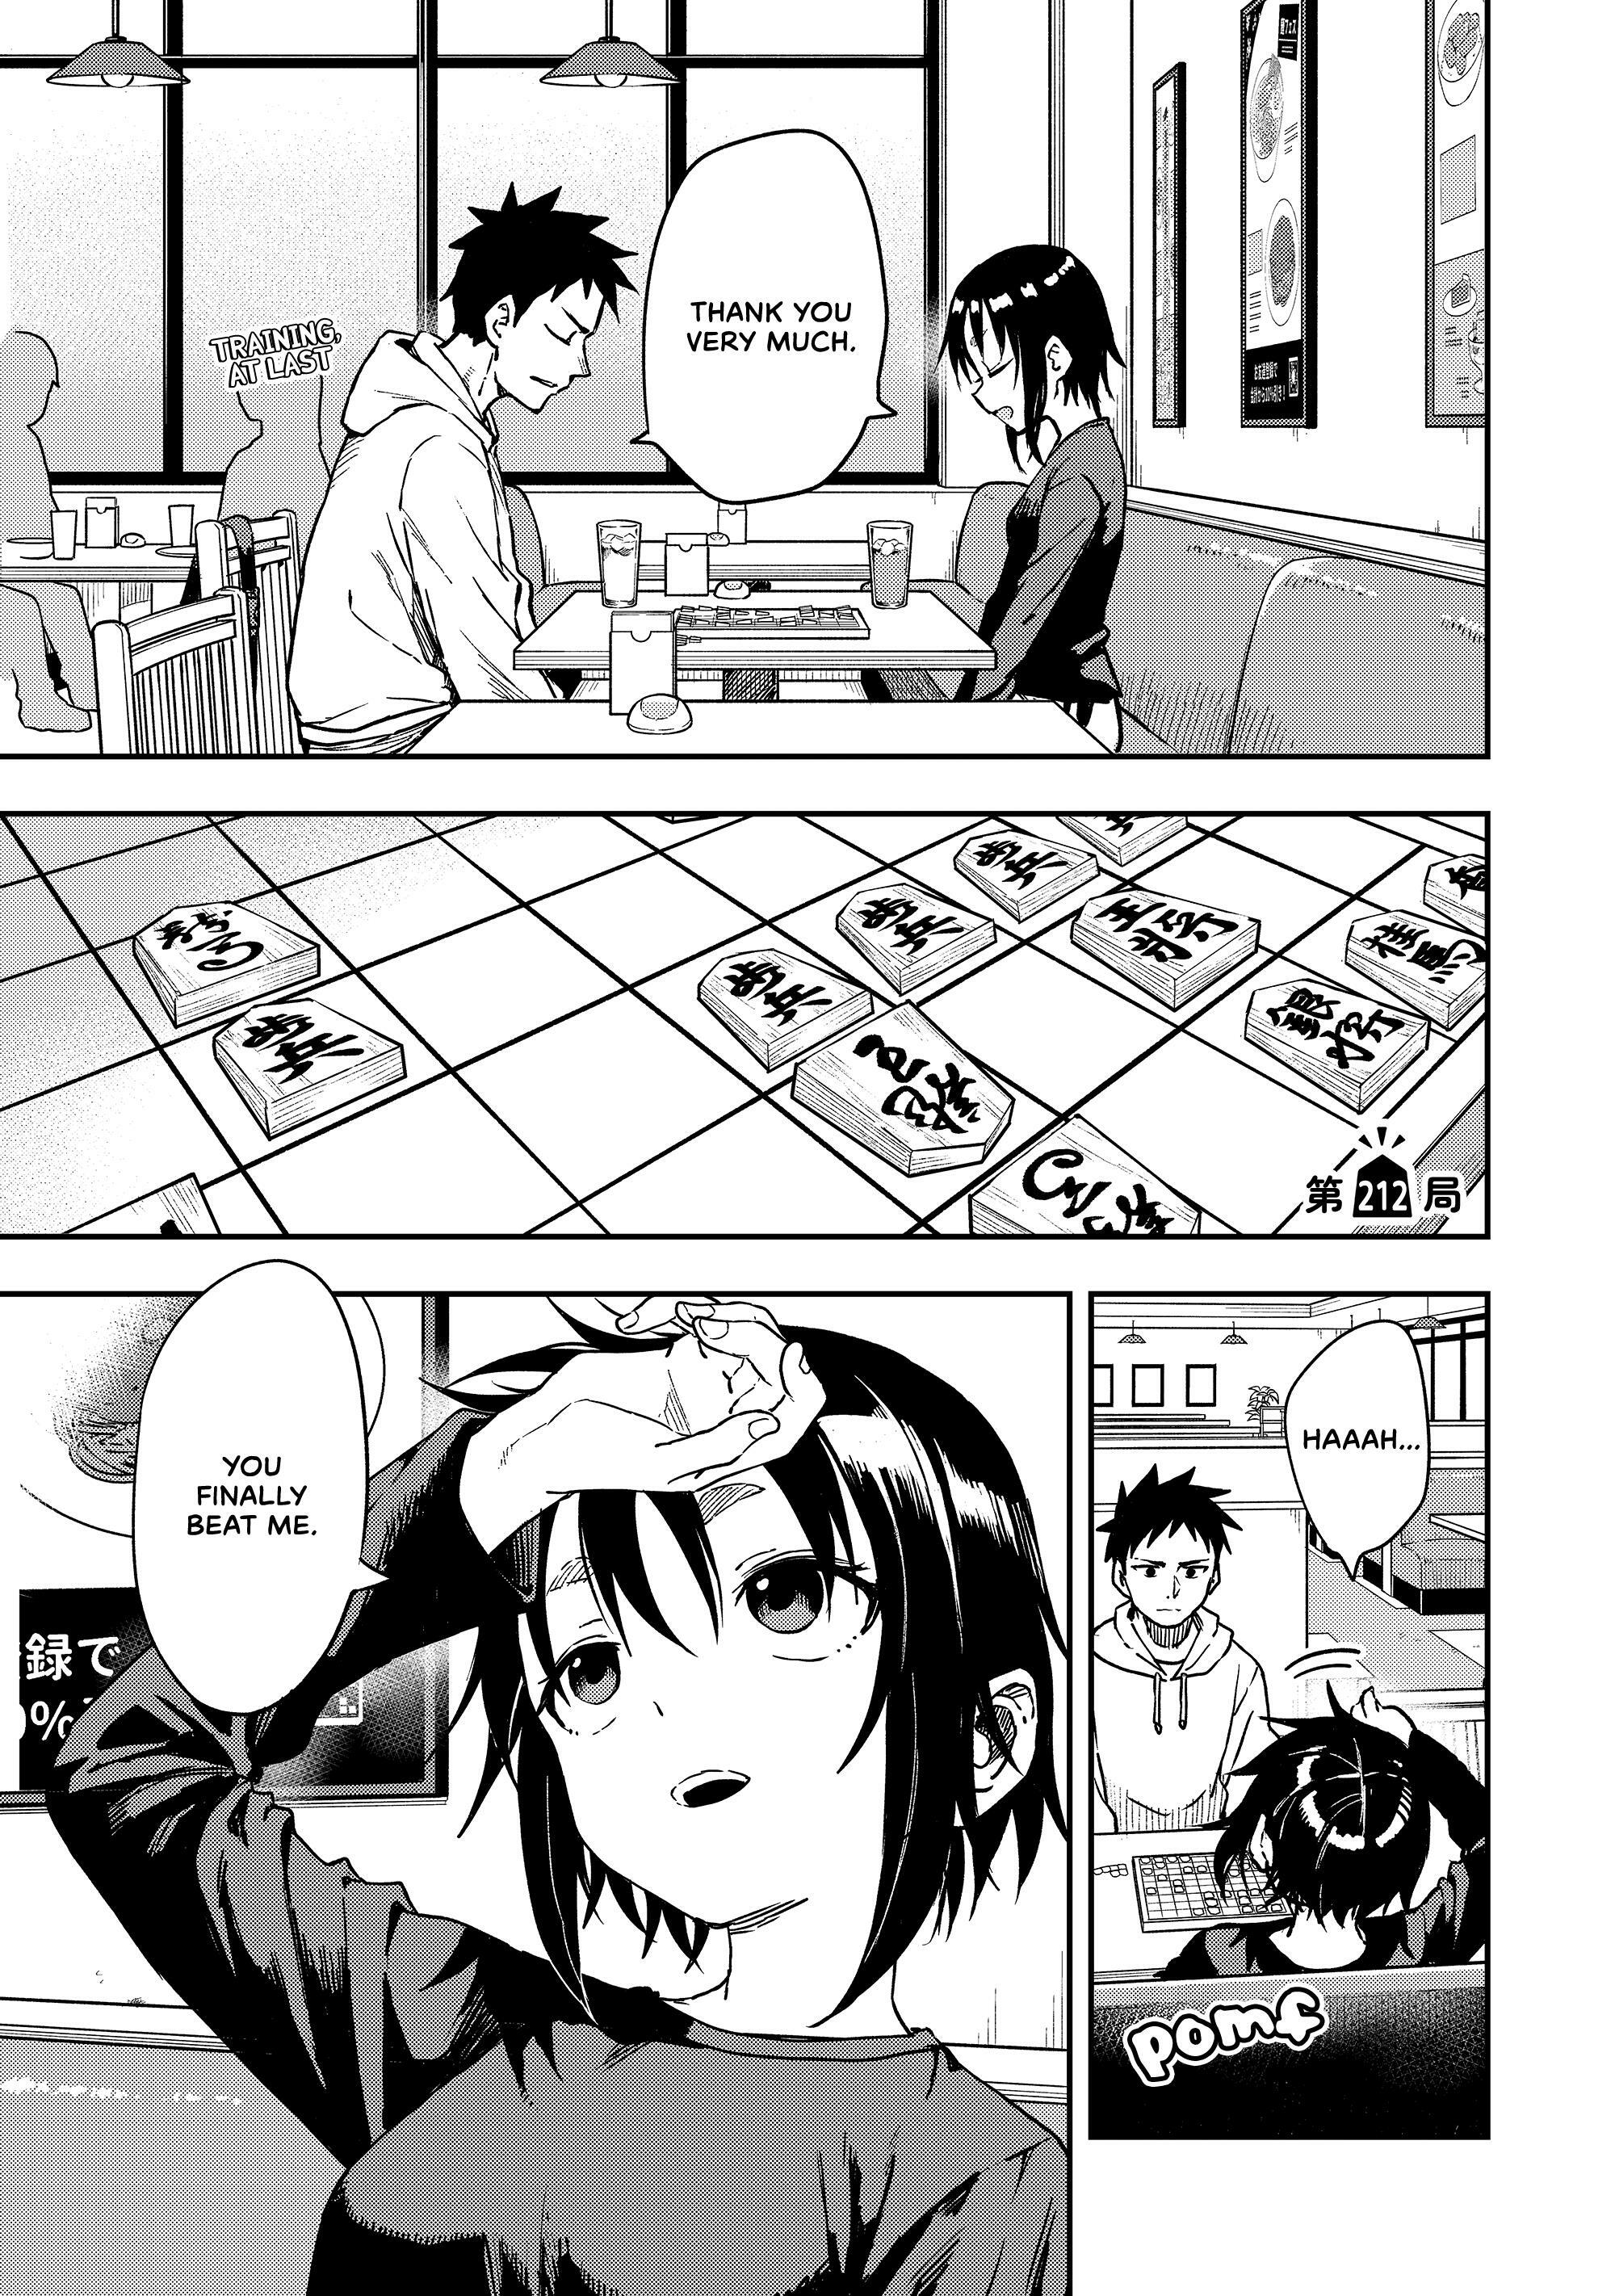 Read Manga Soredemo Ayumu Wa Yosetekuru - Chapter 49